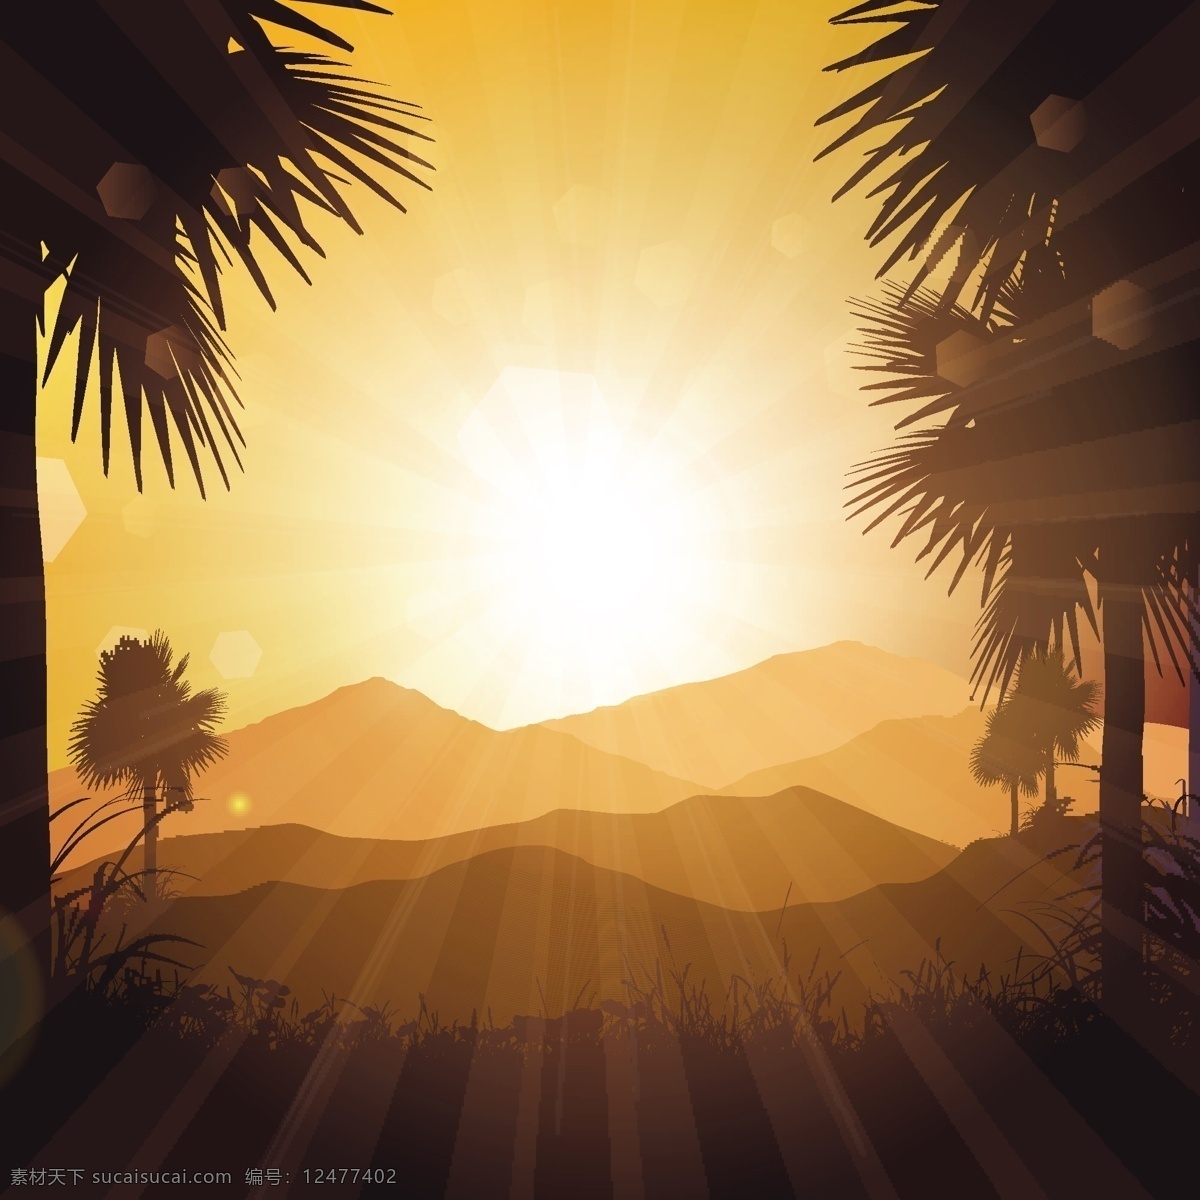 热带 椰树 剪影 夕阳 风景 背景 热带椰树剪影 夕阳风景